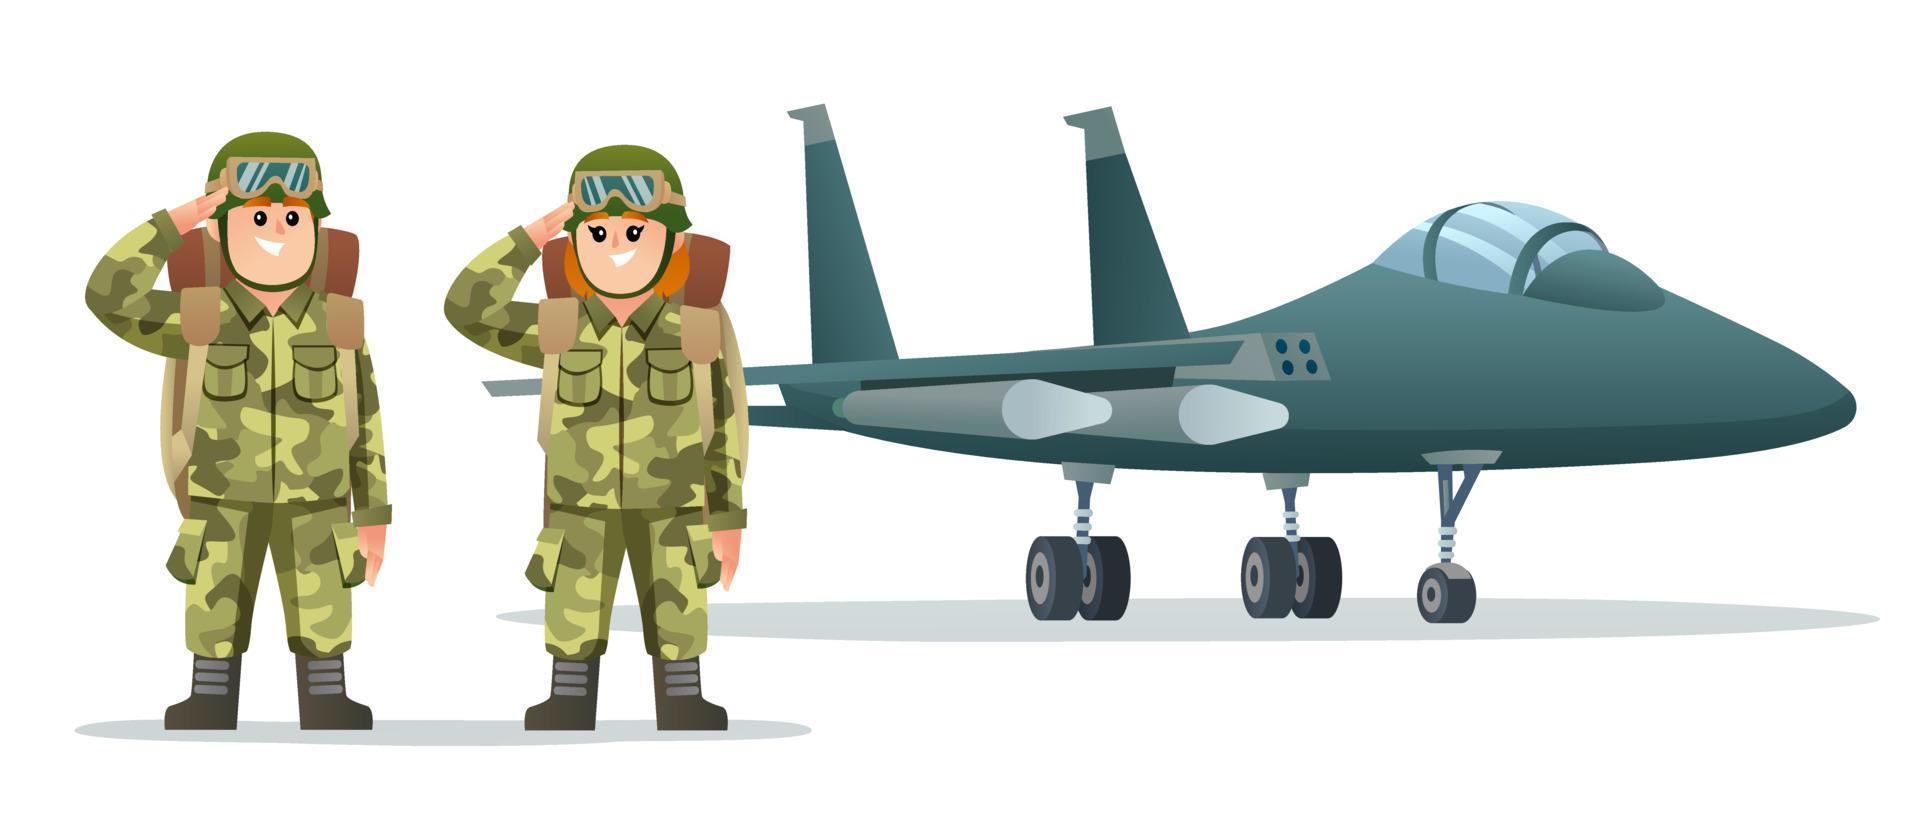 mignon garçon et fille soldat de l'armée portant des personnages de sac à dos avec illustration de dessin animé d'avion à réaction militaire vecteur